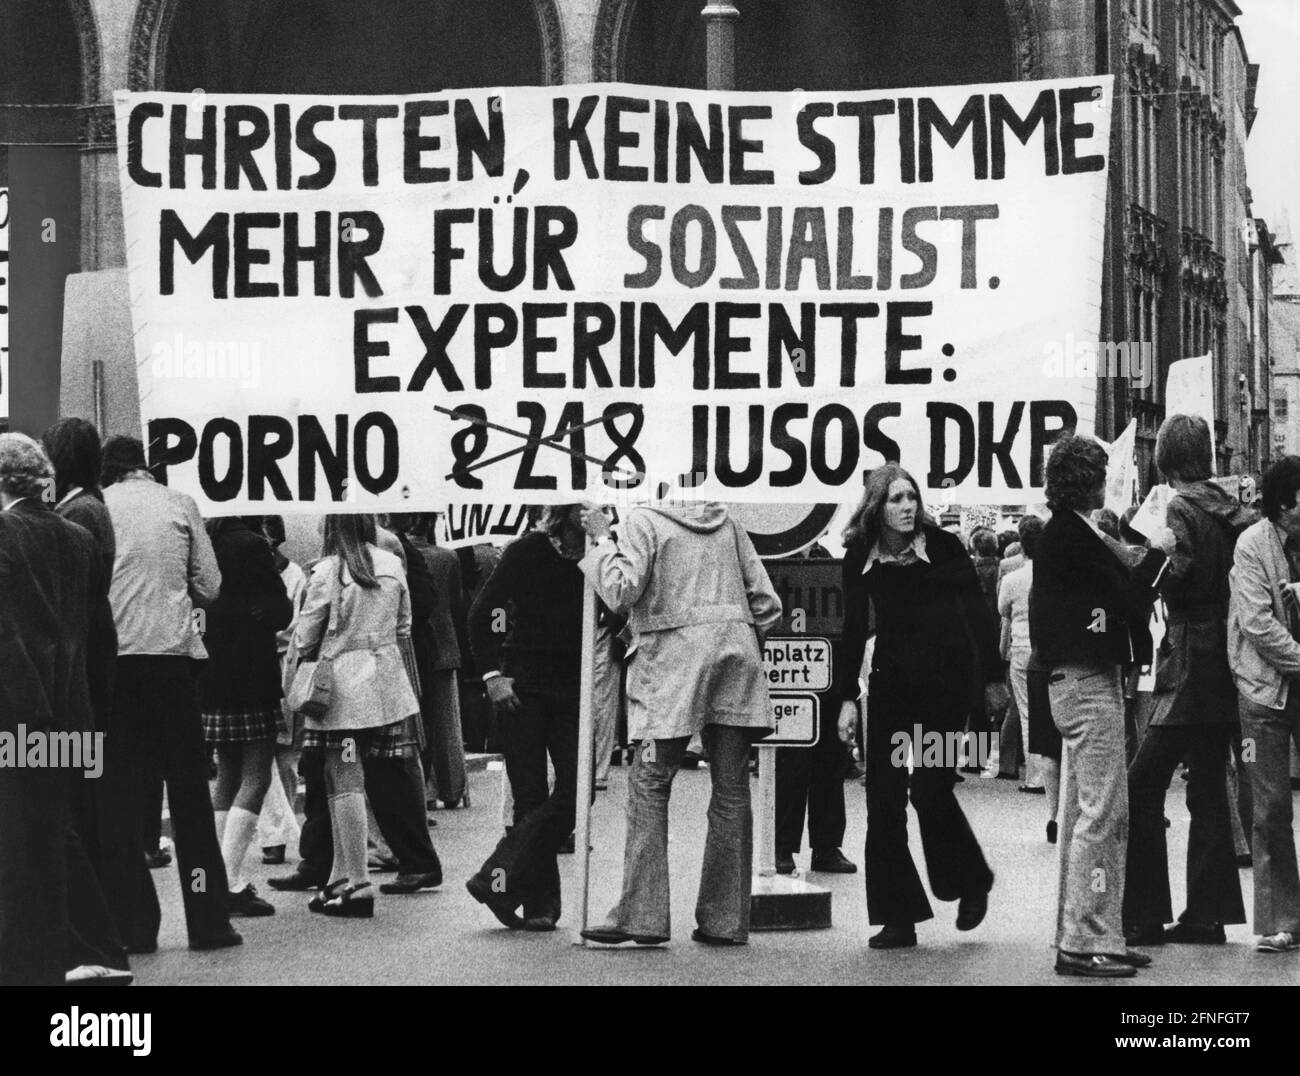 Demonstration für § 218, Abtreibung: Demonstranten auf dem Odeonsplatz mit einem Banner: Christen, keine Stimmen mehr für sozialistische Experimente. [Automatisierte Übersetzung] Stockfoto